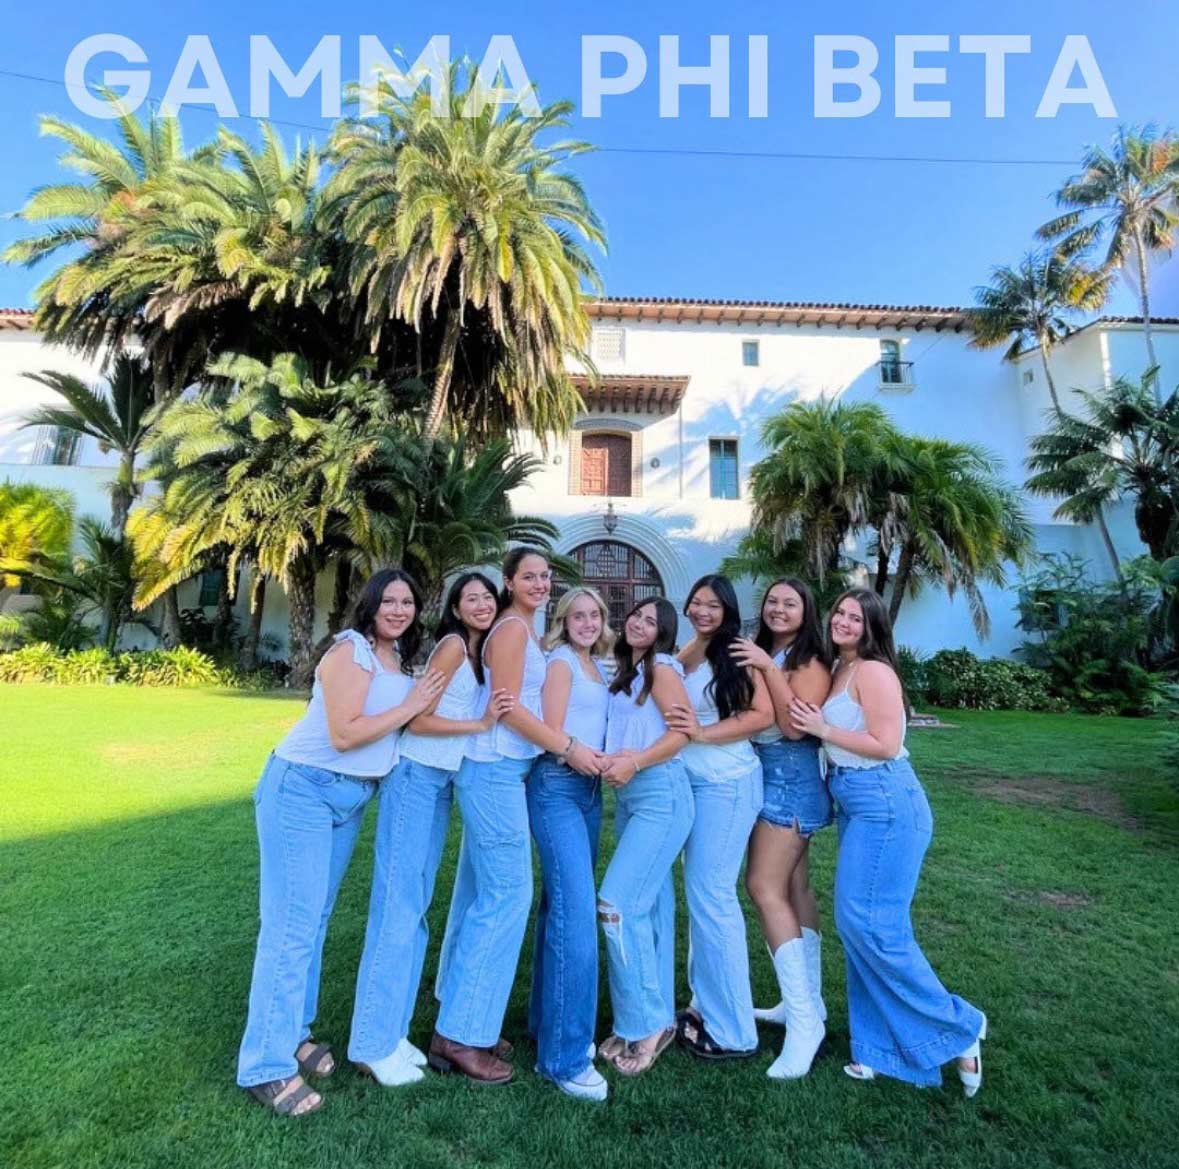 Gamma Phi Beta members